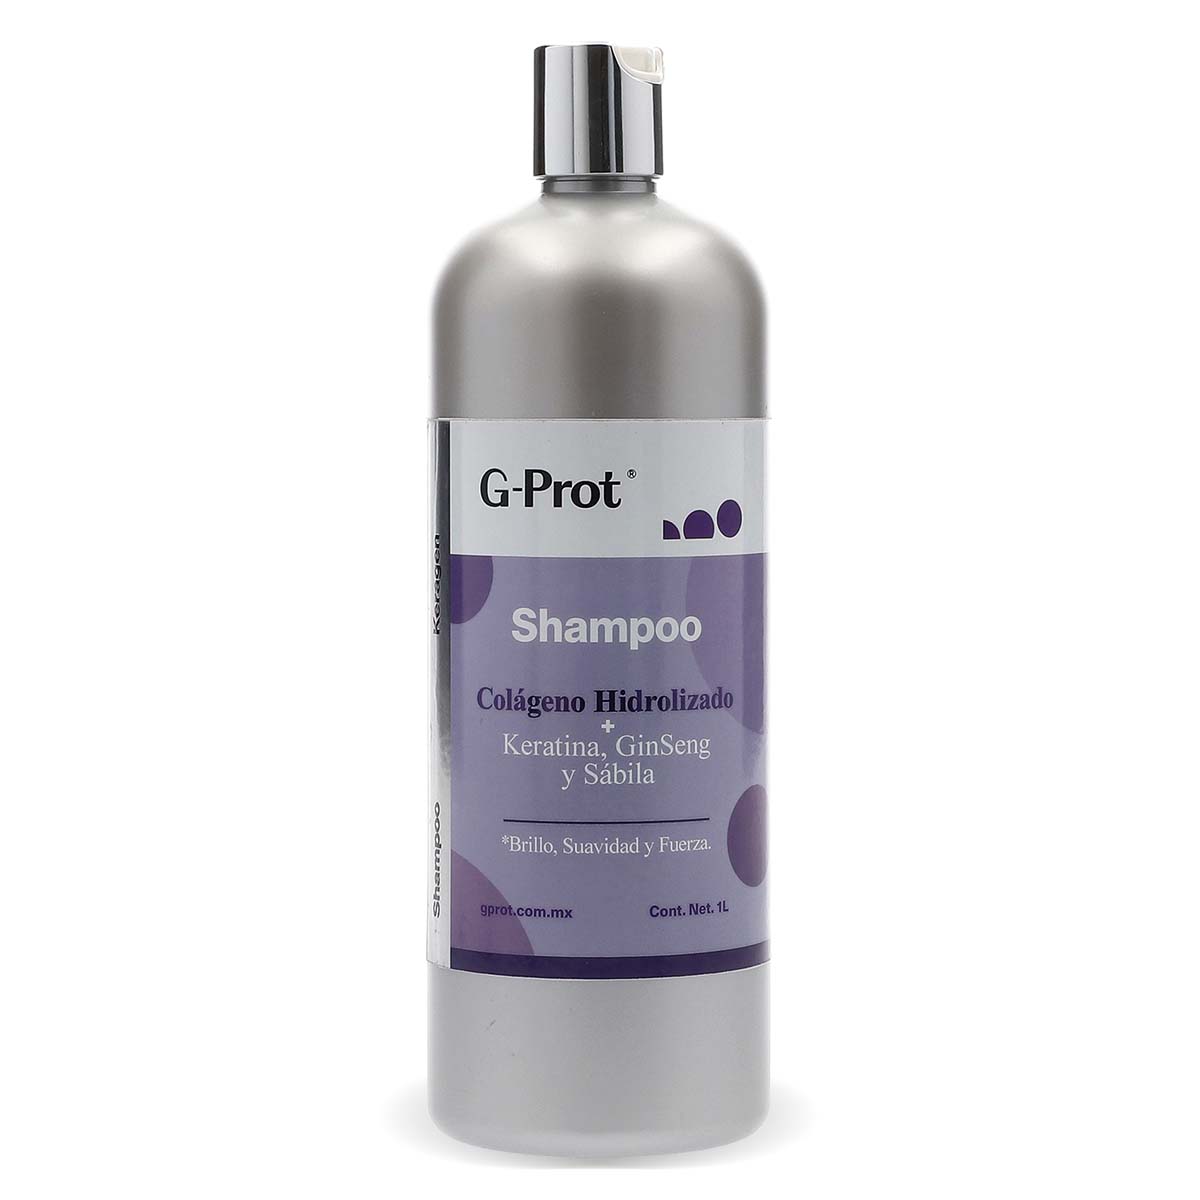 Shampoo Keragen - Colágeno Hidrolizado + Keratina, Ginseng y Sábila